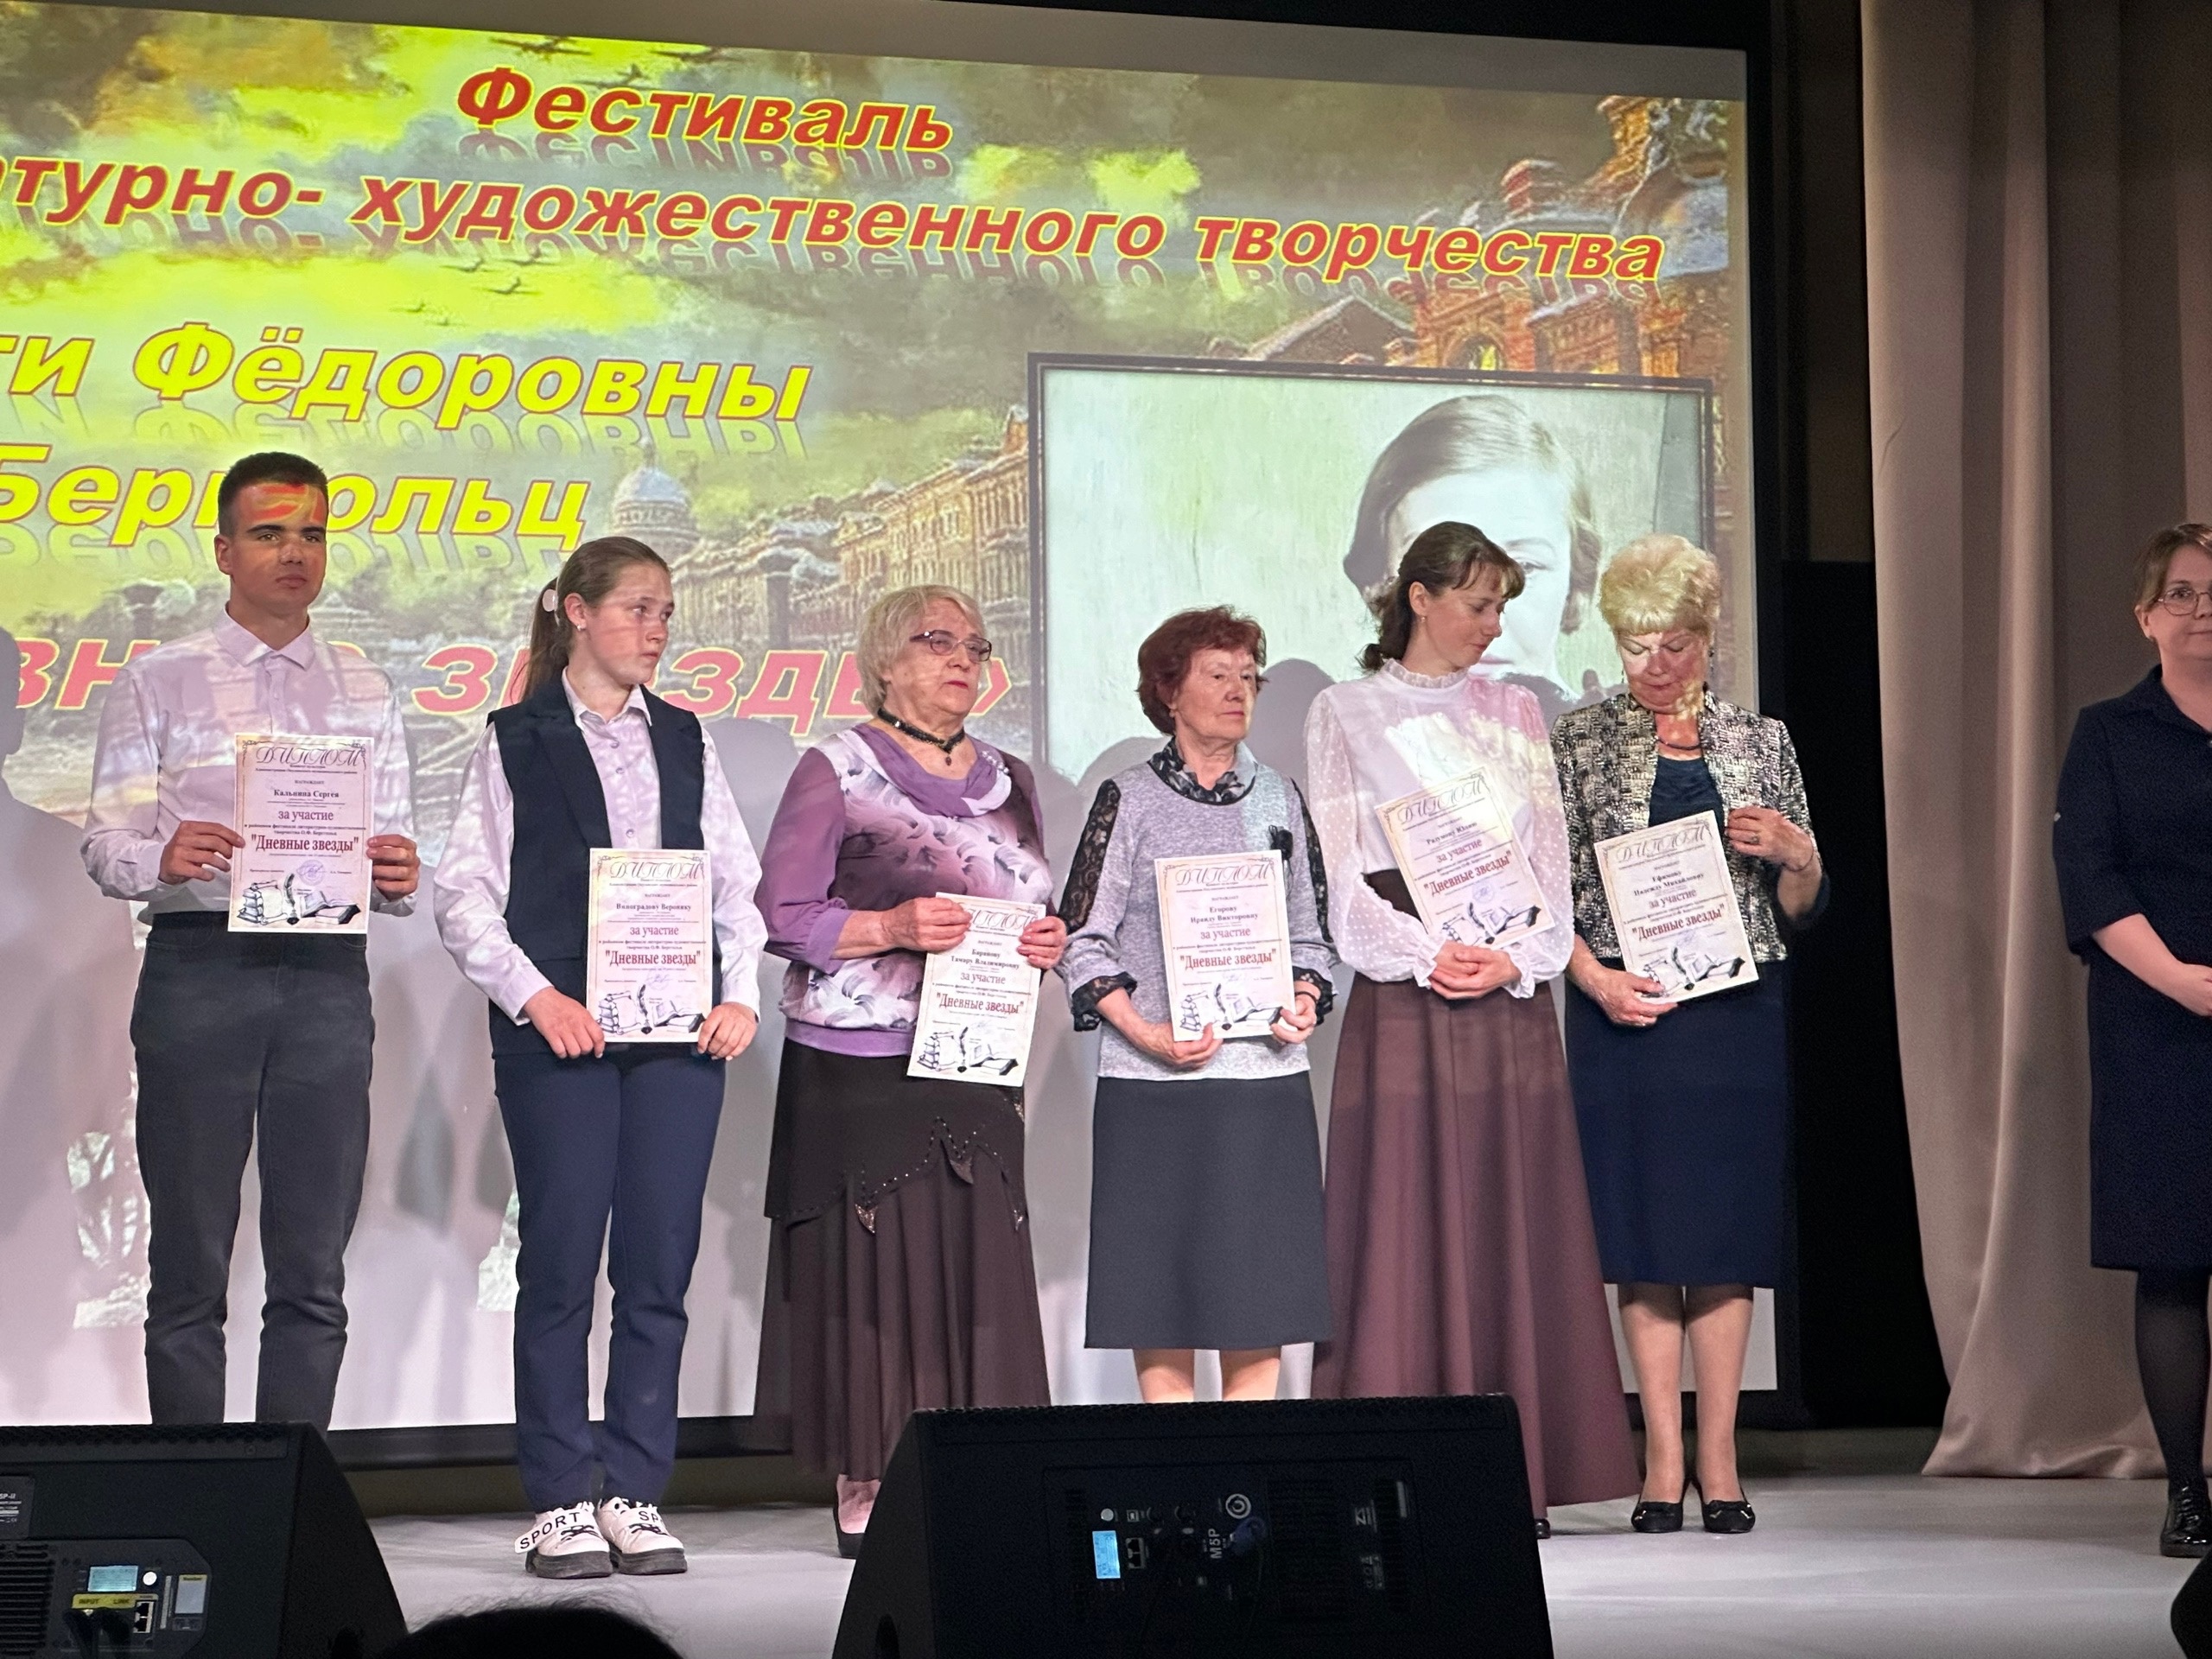 Фестиваль литературно-художественного творчества «Дневные звезды».